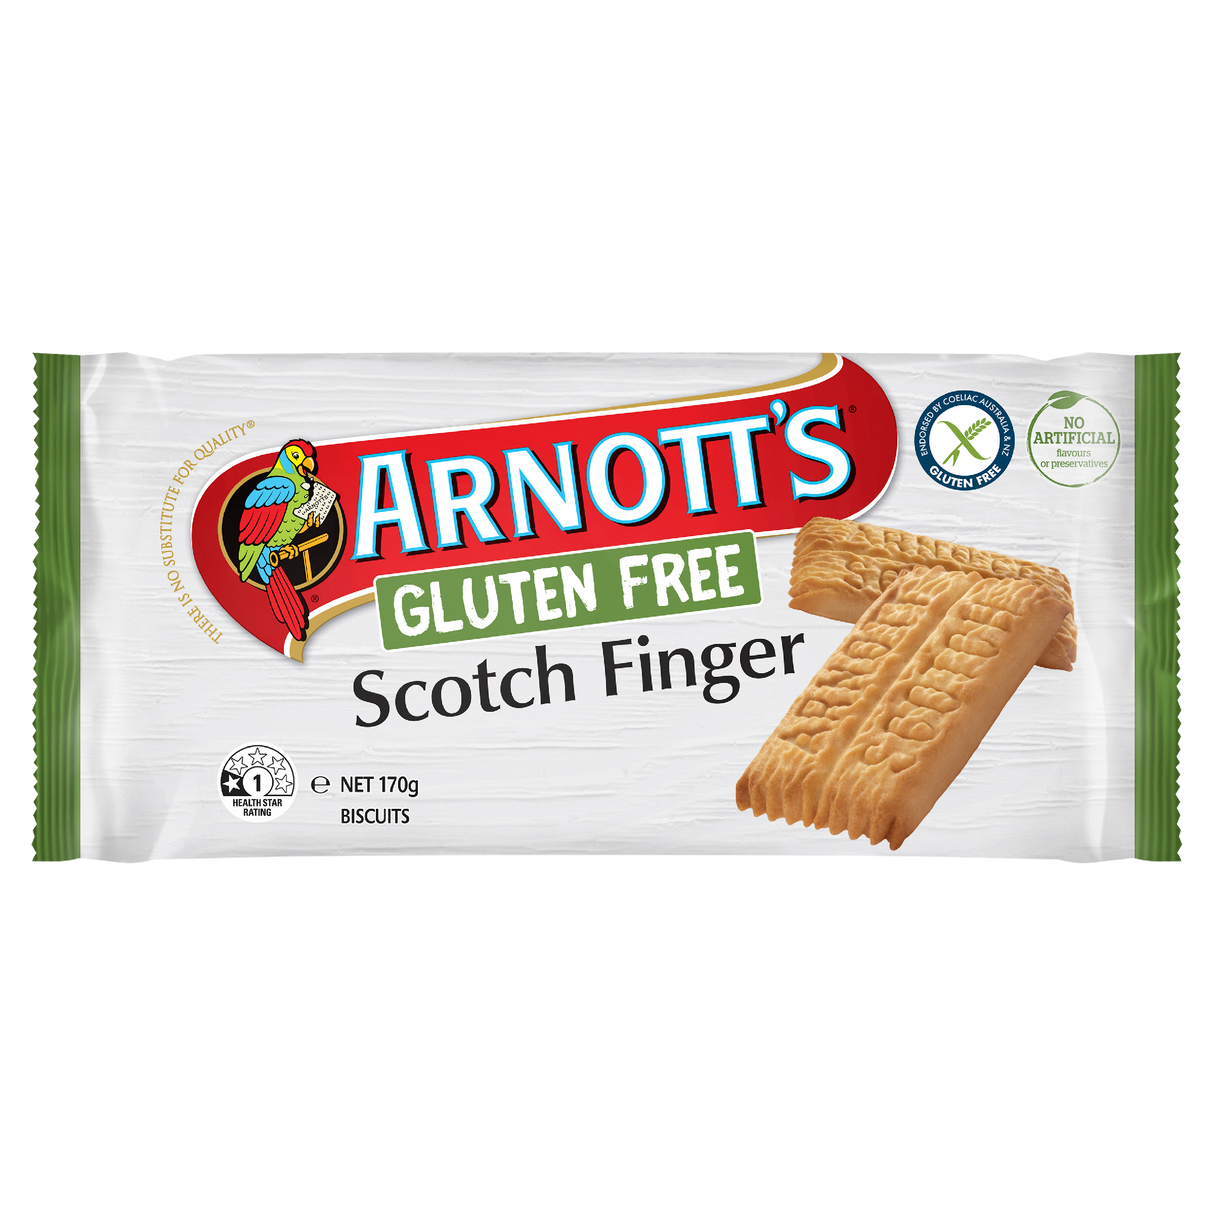 Arnott's Gluten Free Scotch Finger Biscuits 170g